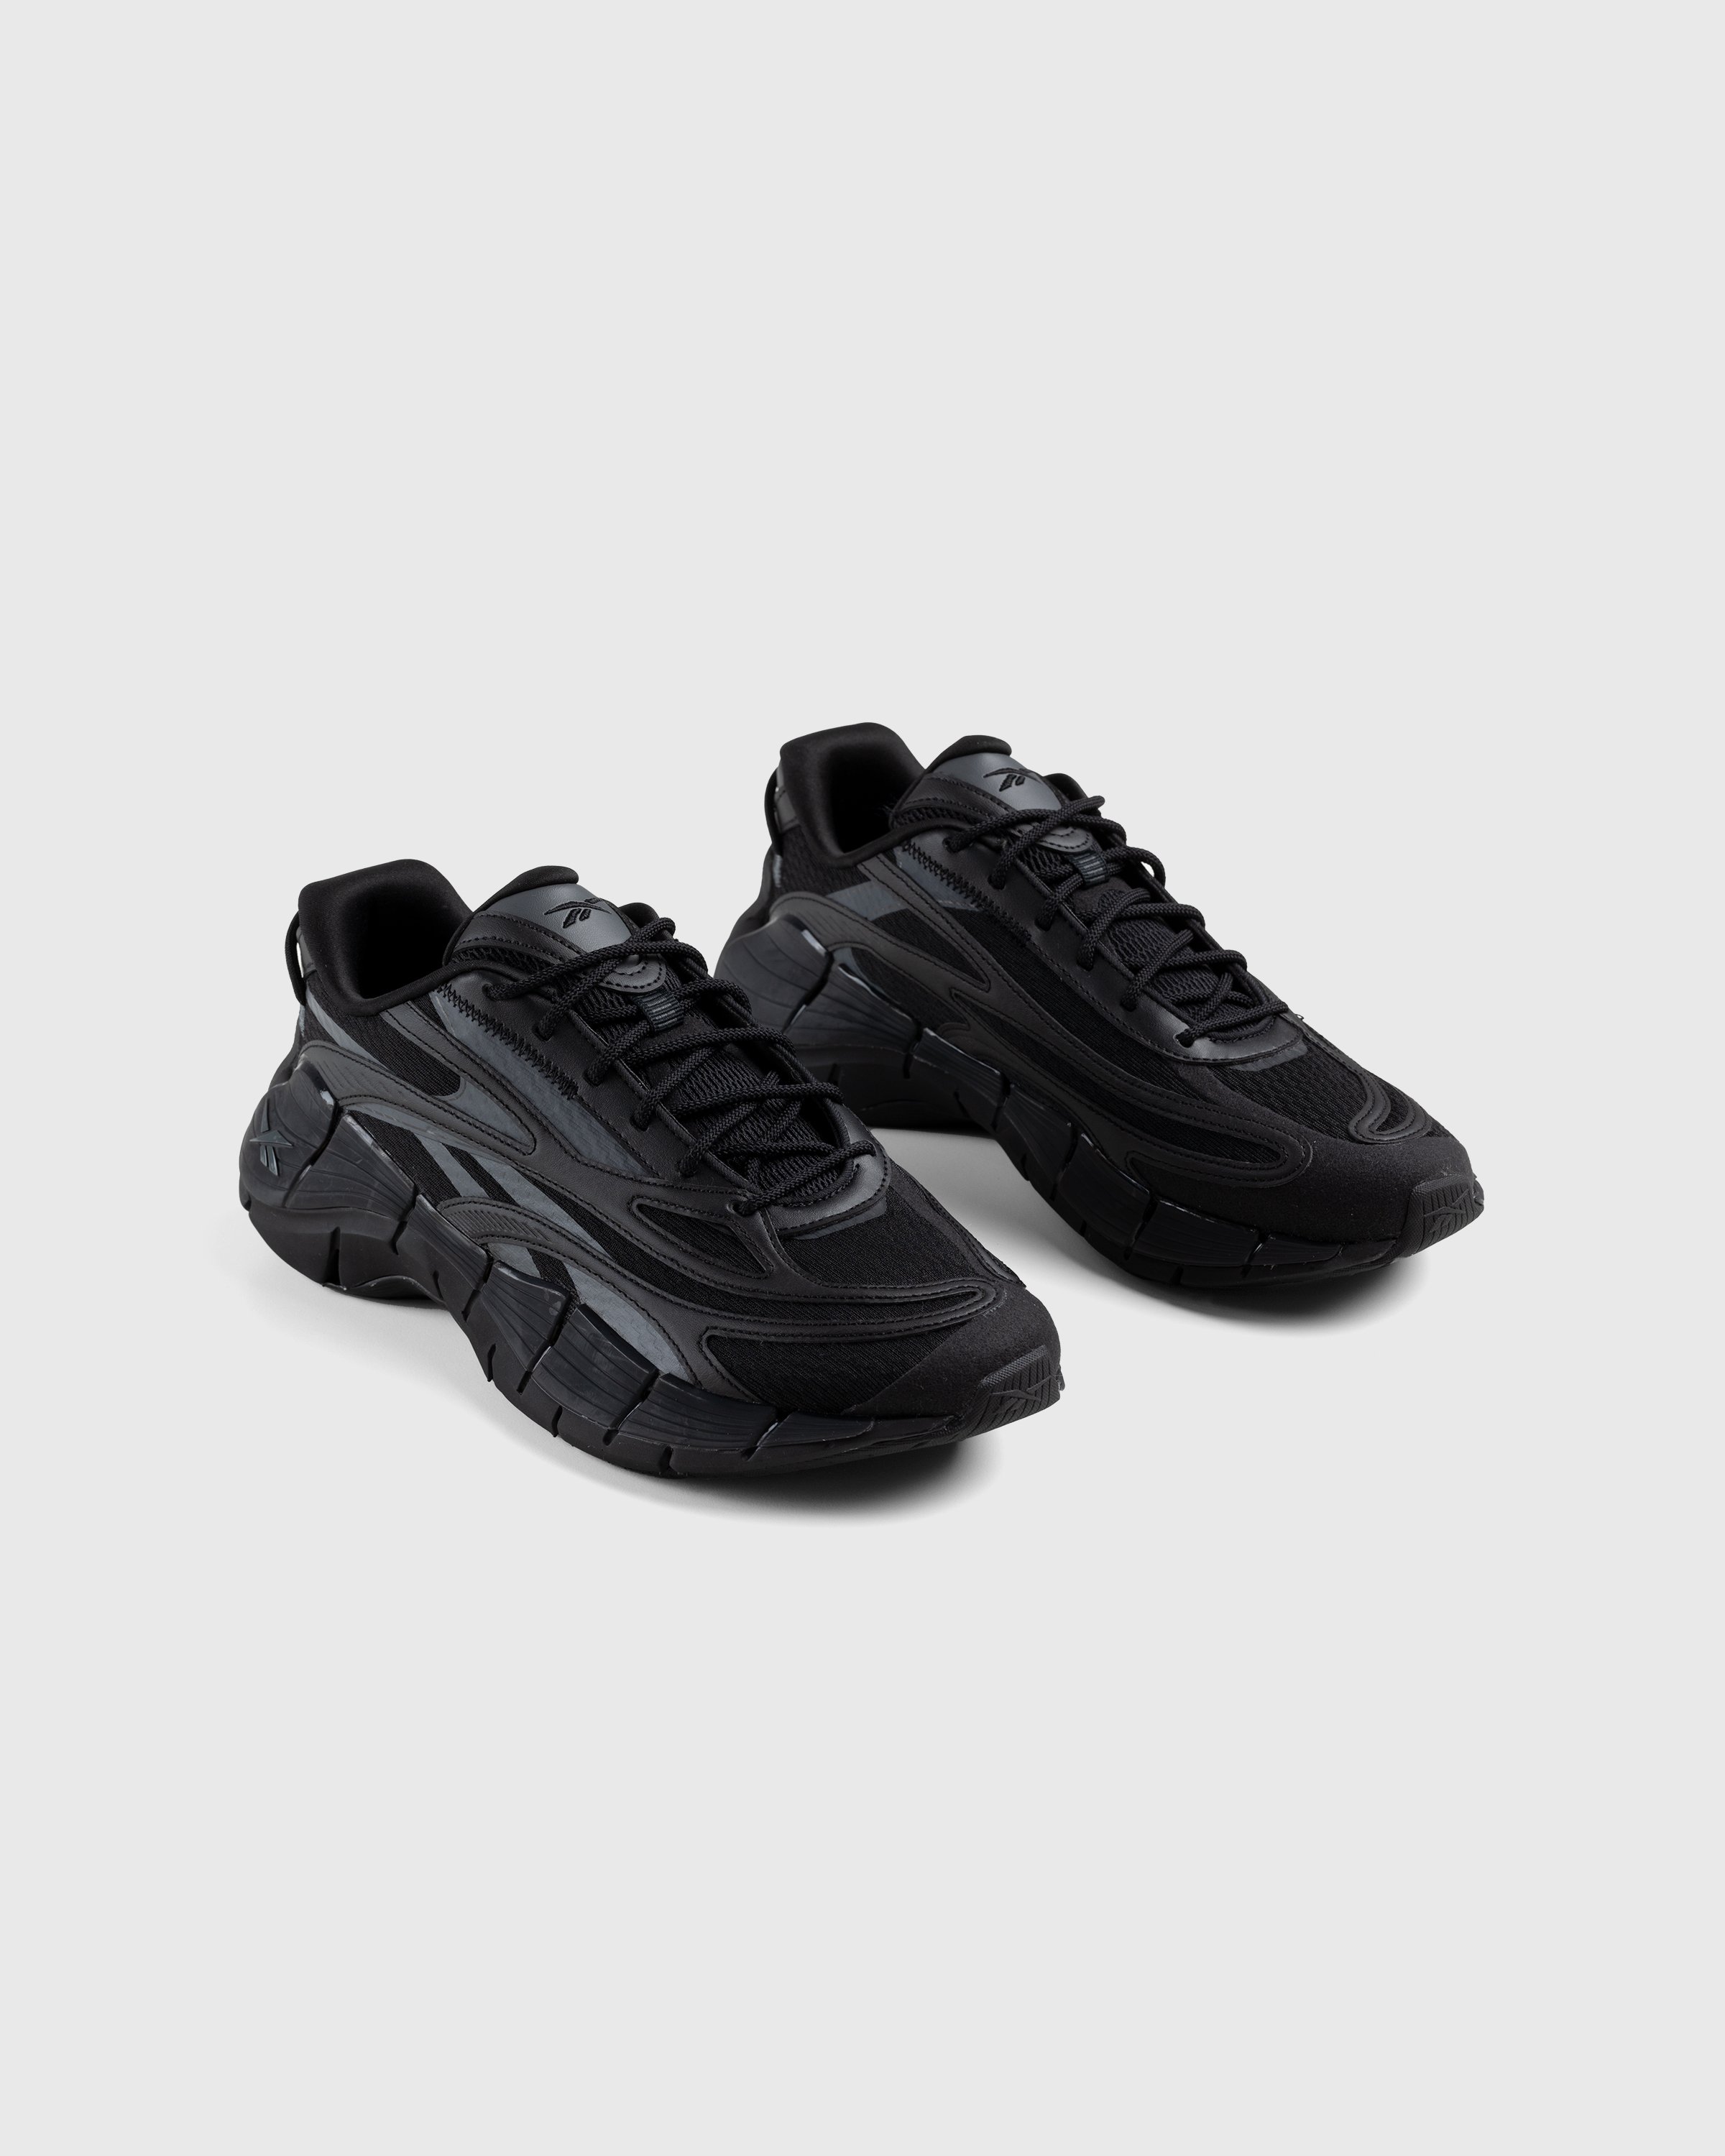 Reebok - Zig Kinetica 2.5 Black - Footwear - Black - Image 3